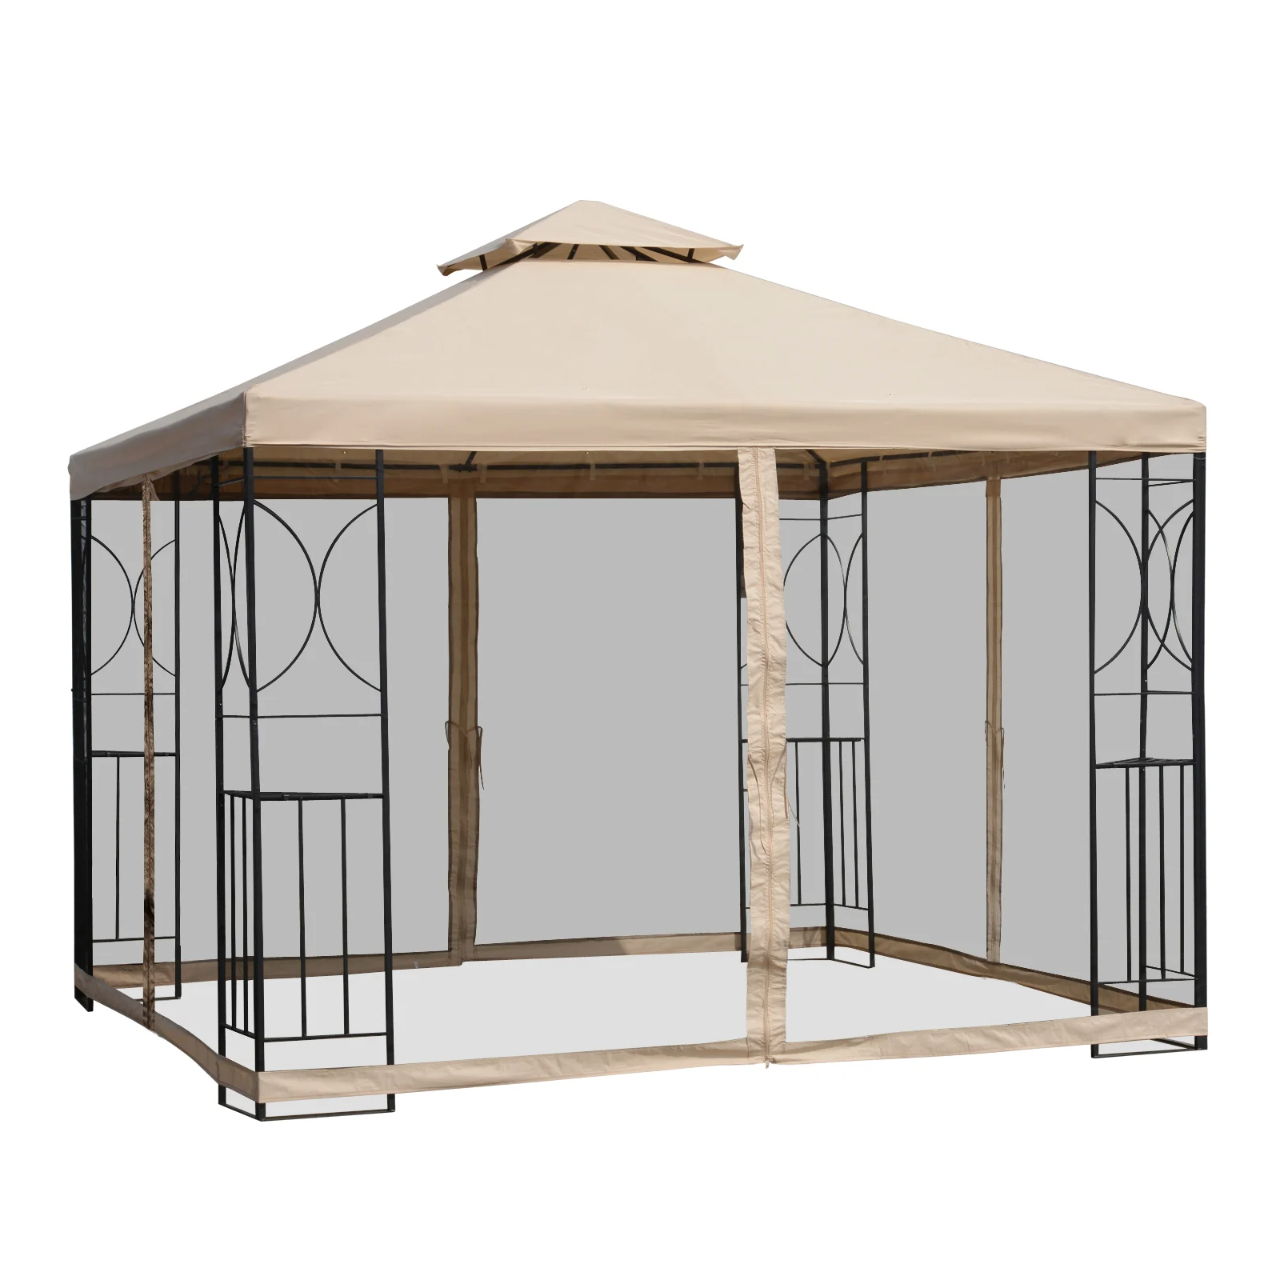 Tente de fête Nancy's Fridley - Pavillon - Résistant aux intempéries - Parois latérales - Beige - Noir - Métal - Polyester - L300 x L300 x H278 cm